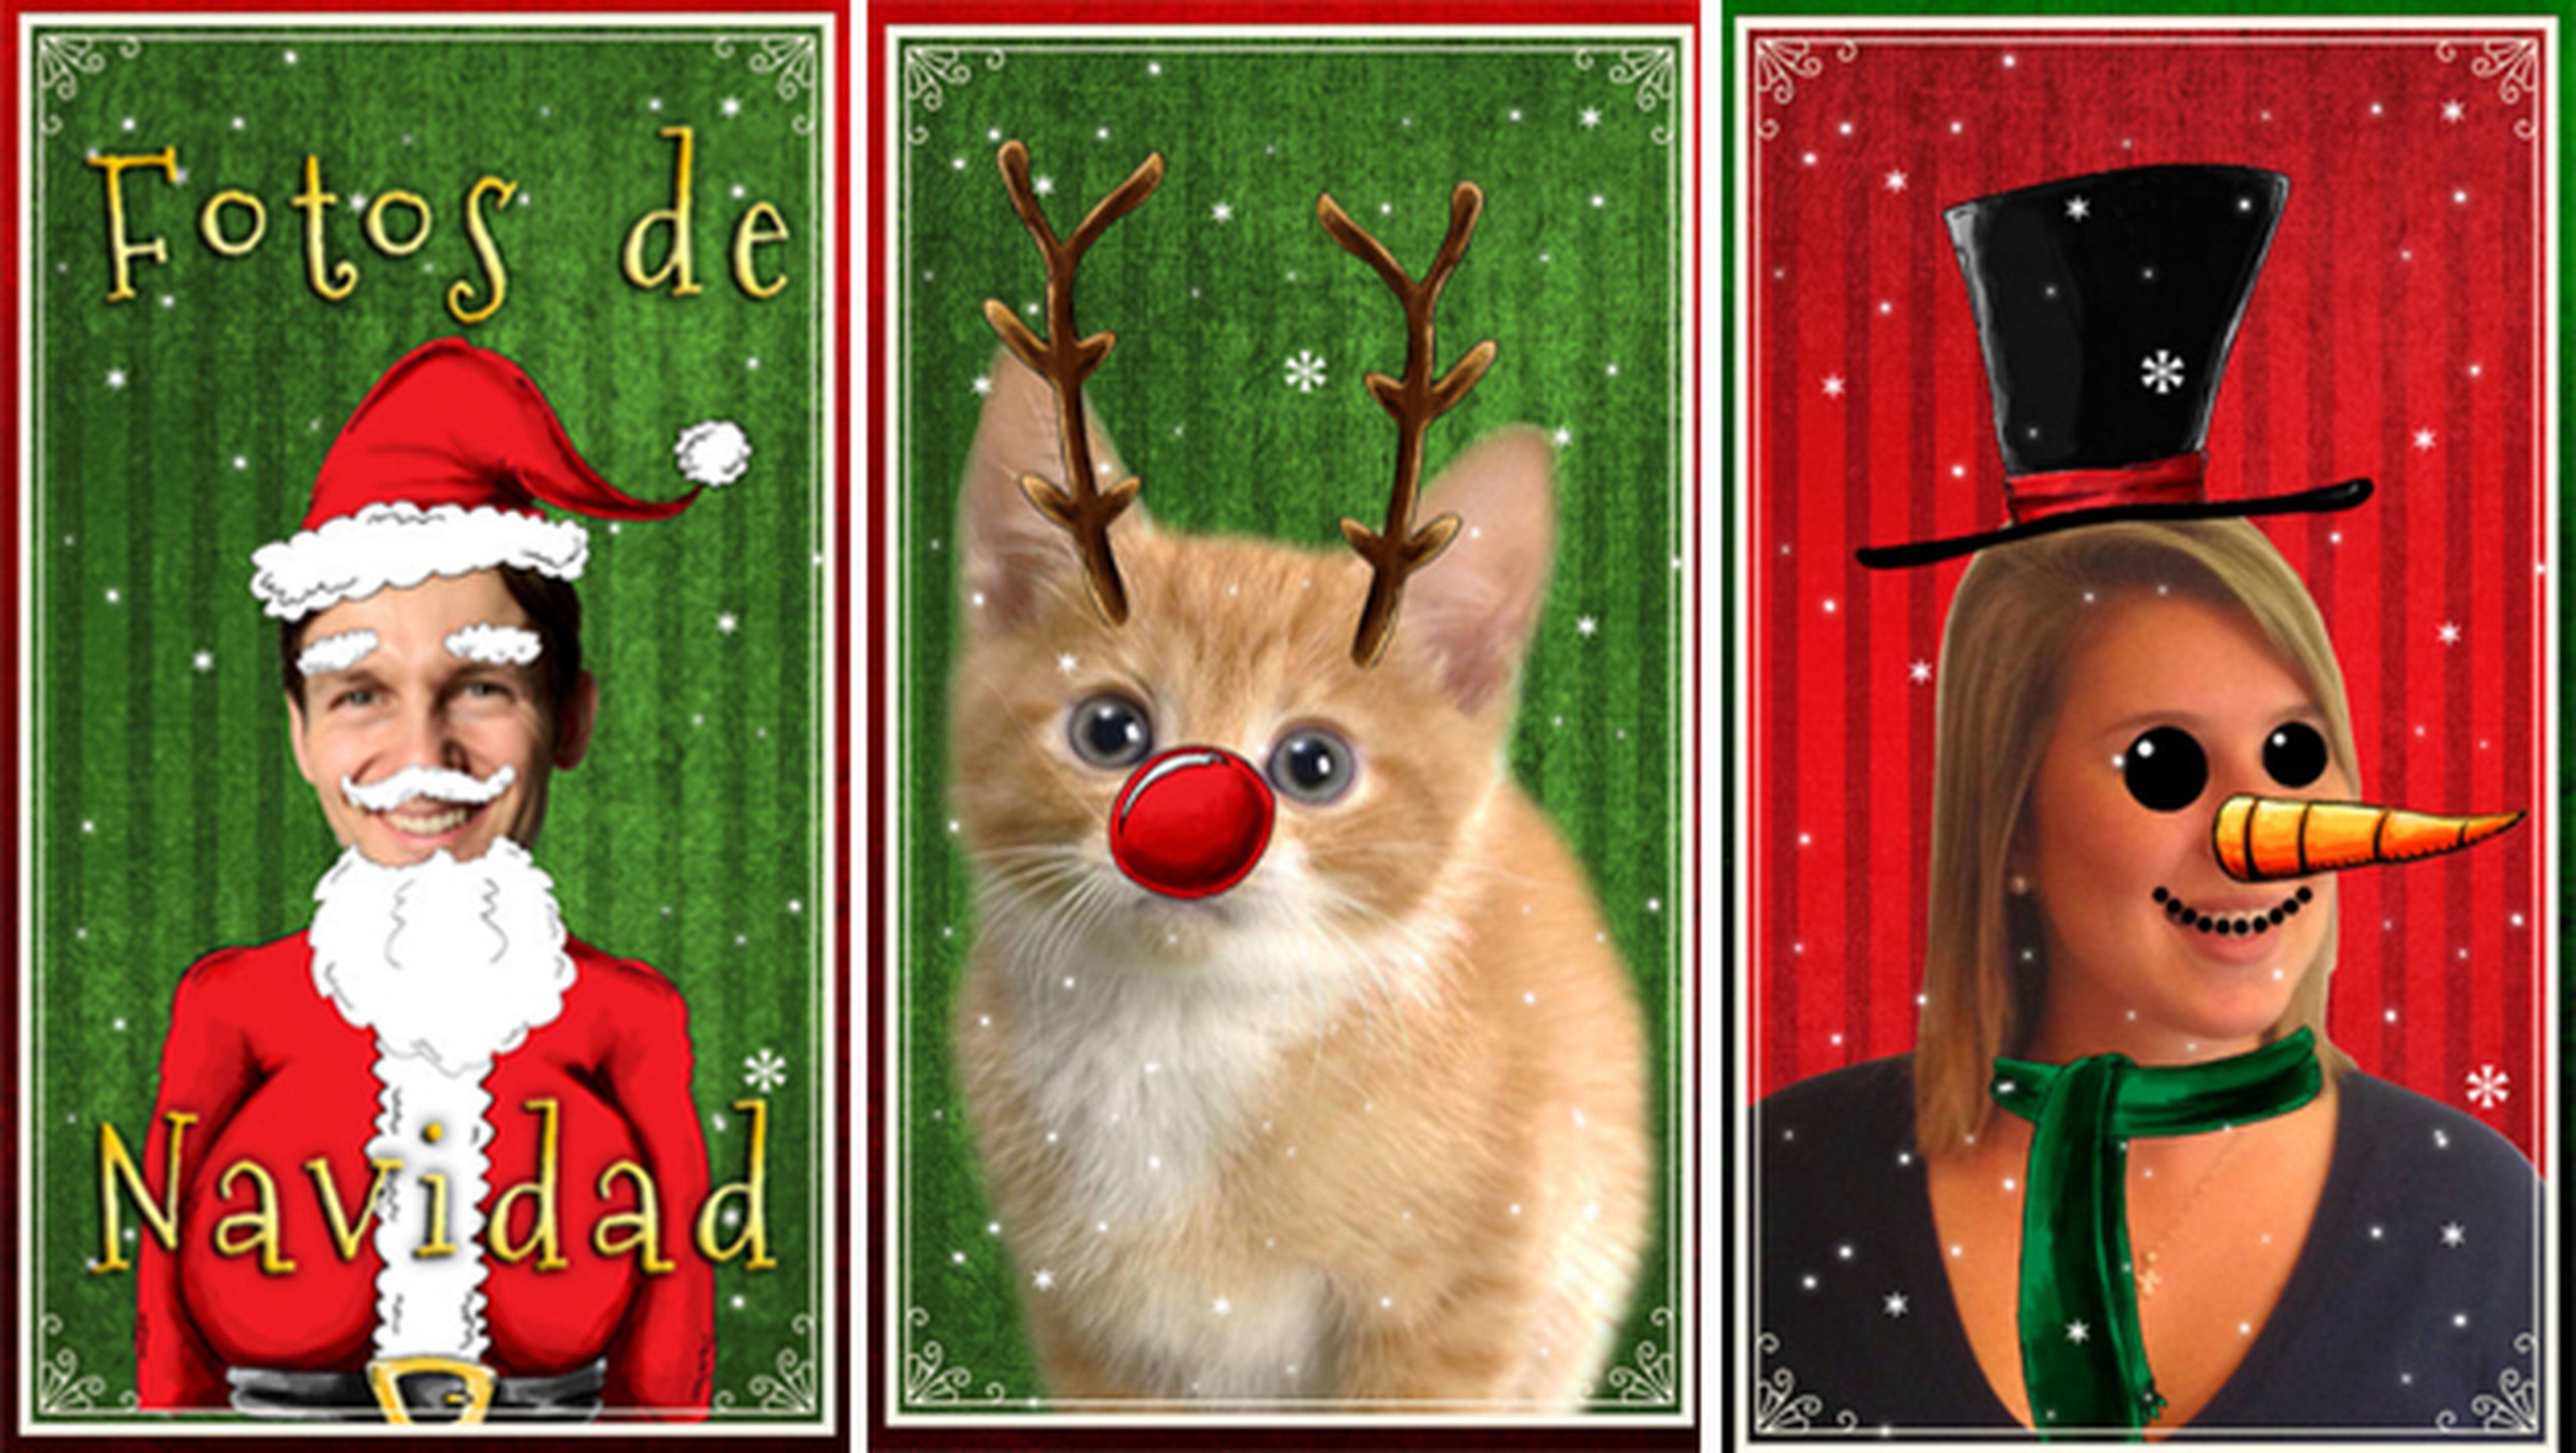 Fotos Navidad Apps webs crear postales Navidad